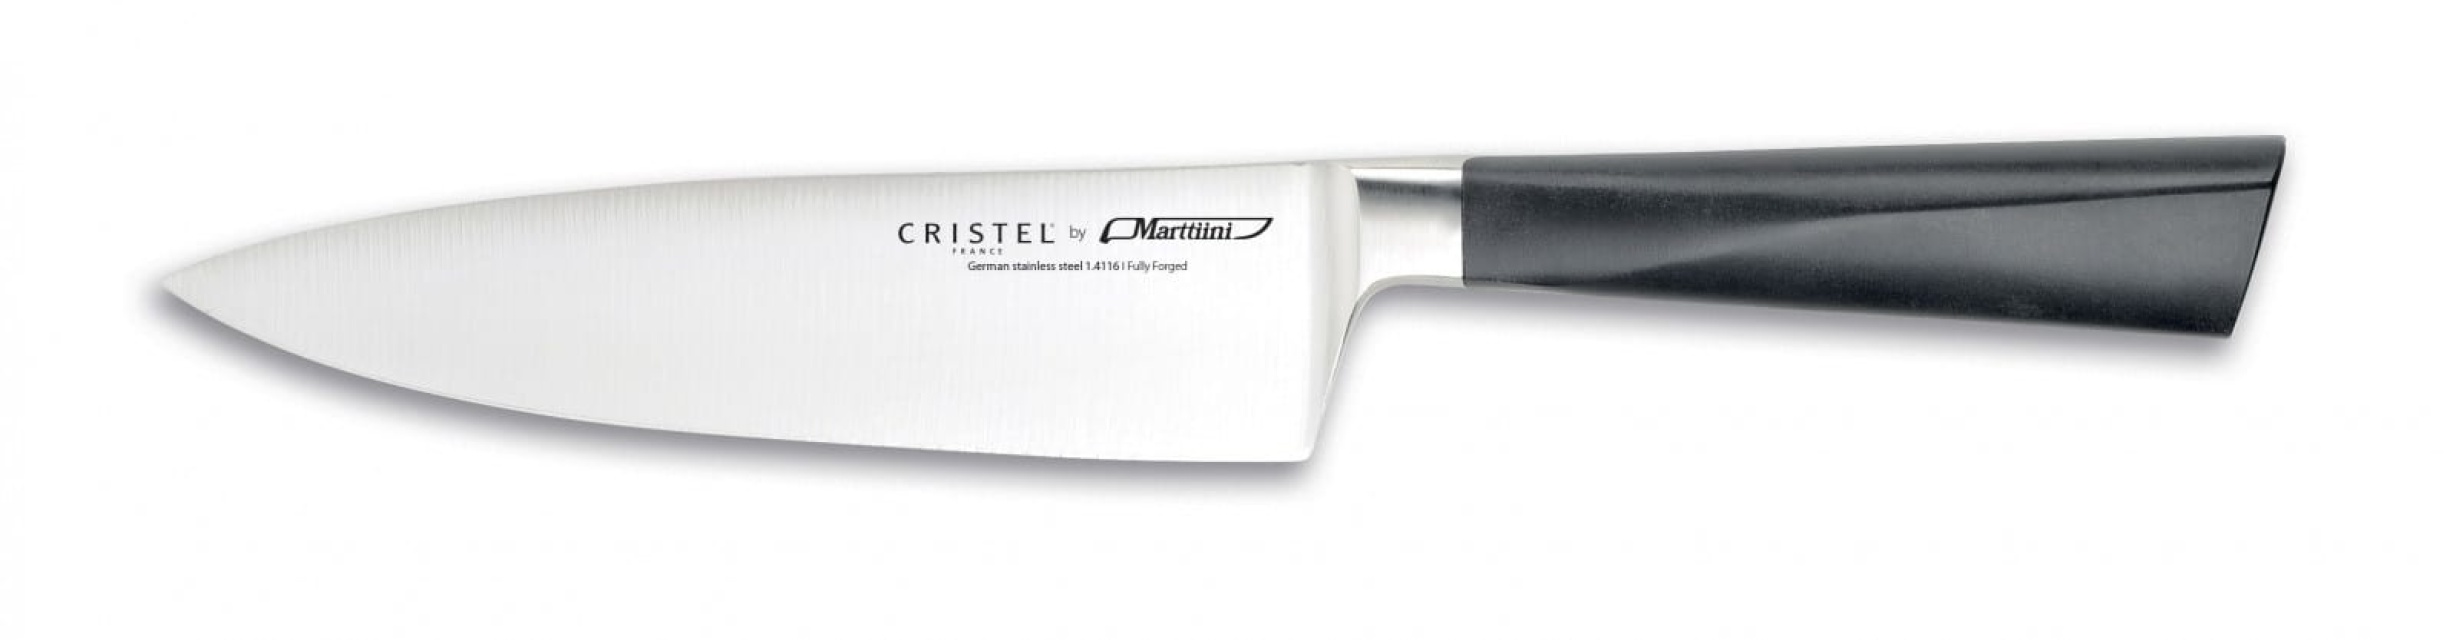 Nóż szefa kuchni, 16 cm - Cristel